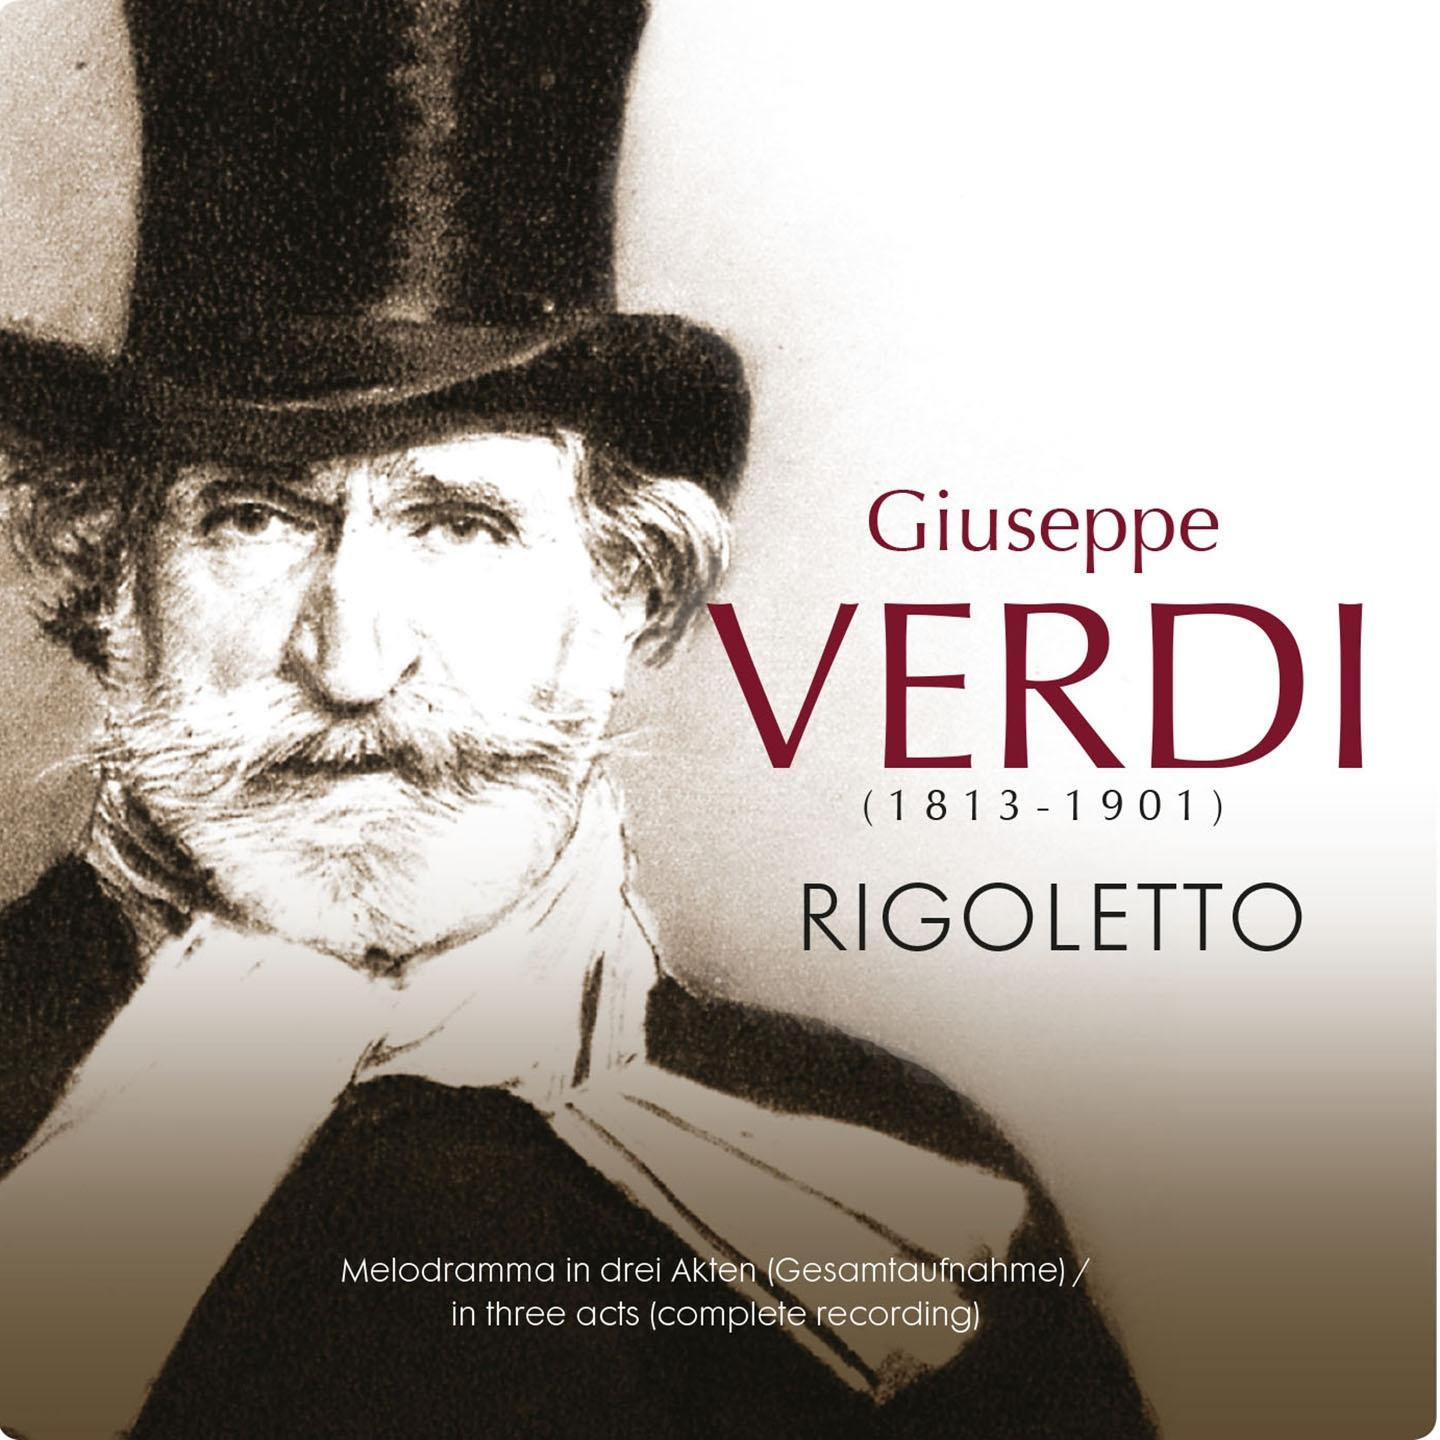 Rigoletto, Act II: "Mio padre! … Dio! Mia Gilda … Parla, siam soli … Si, vendetta, tremenda vendetta"